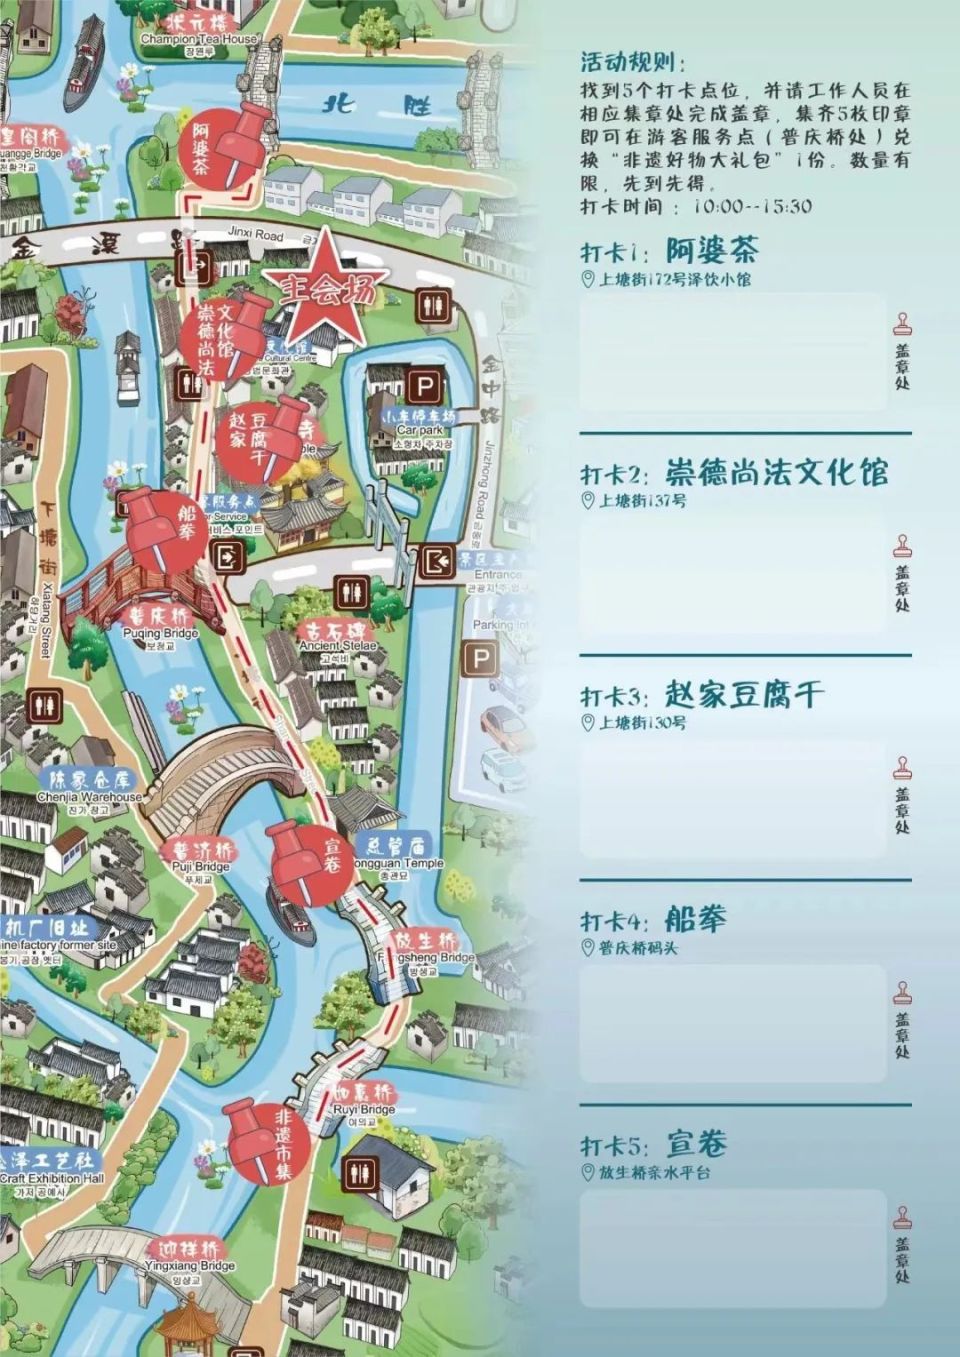 活动当天,市民游客拿着专属非遗打卡地图,在金泽古镇内寻访5个指定